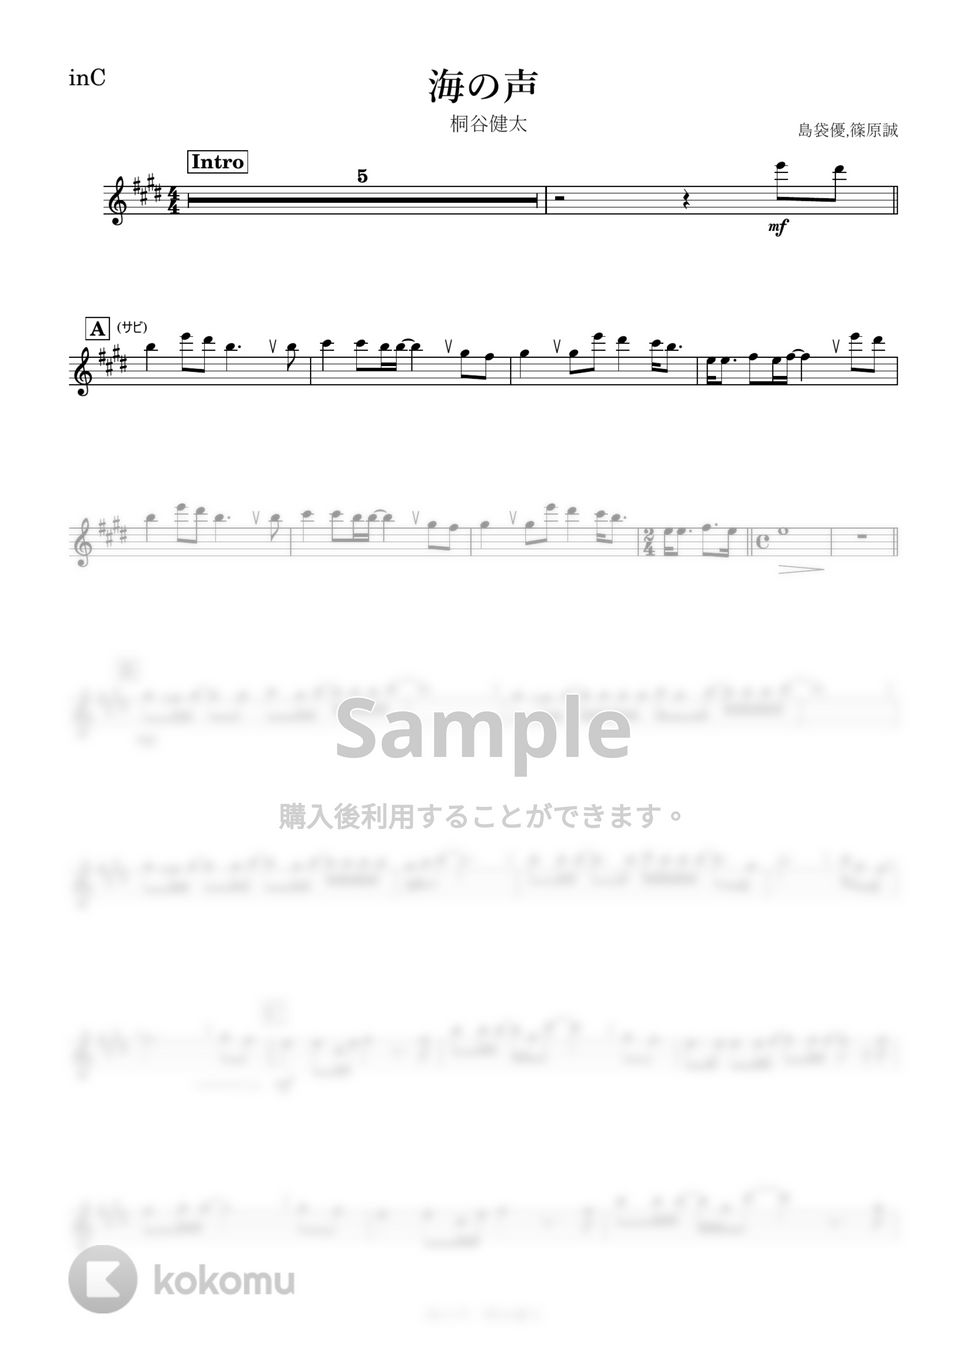 桐谷健太 - 海の声 (C) by kanamusic